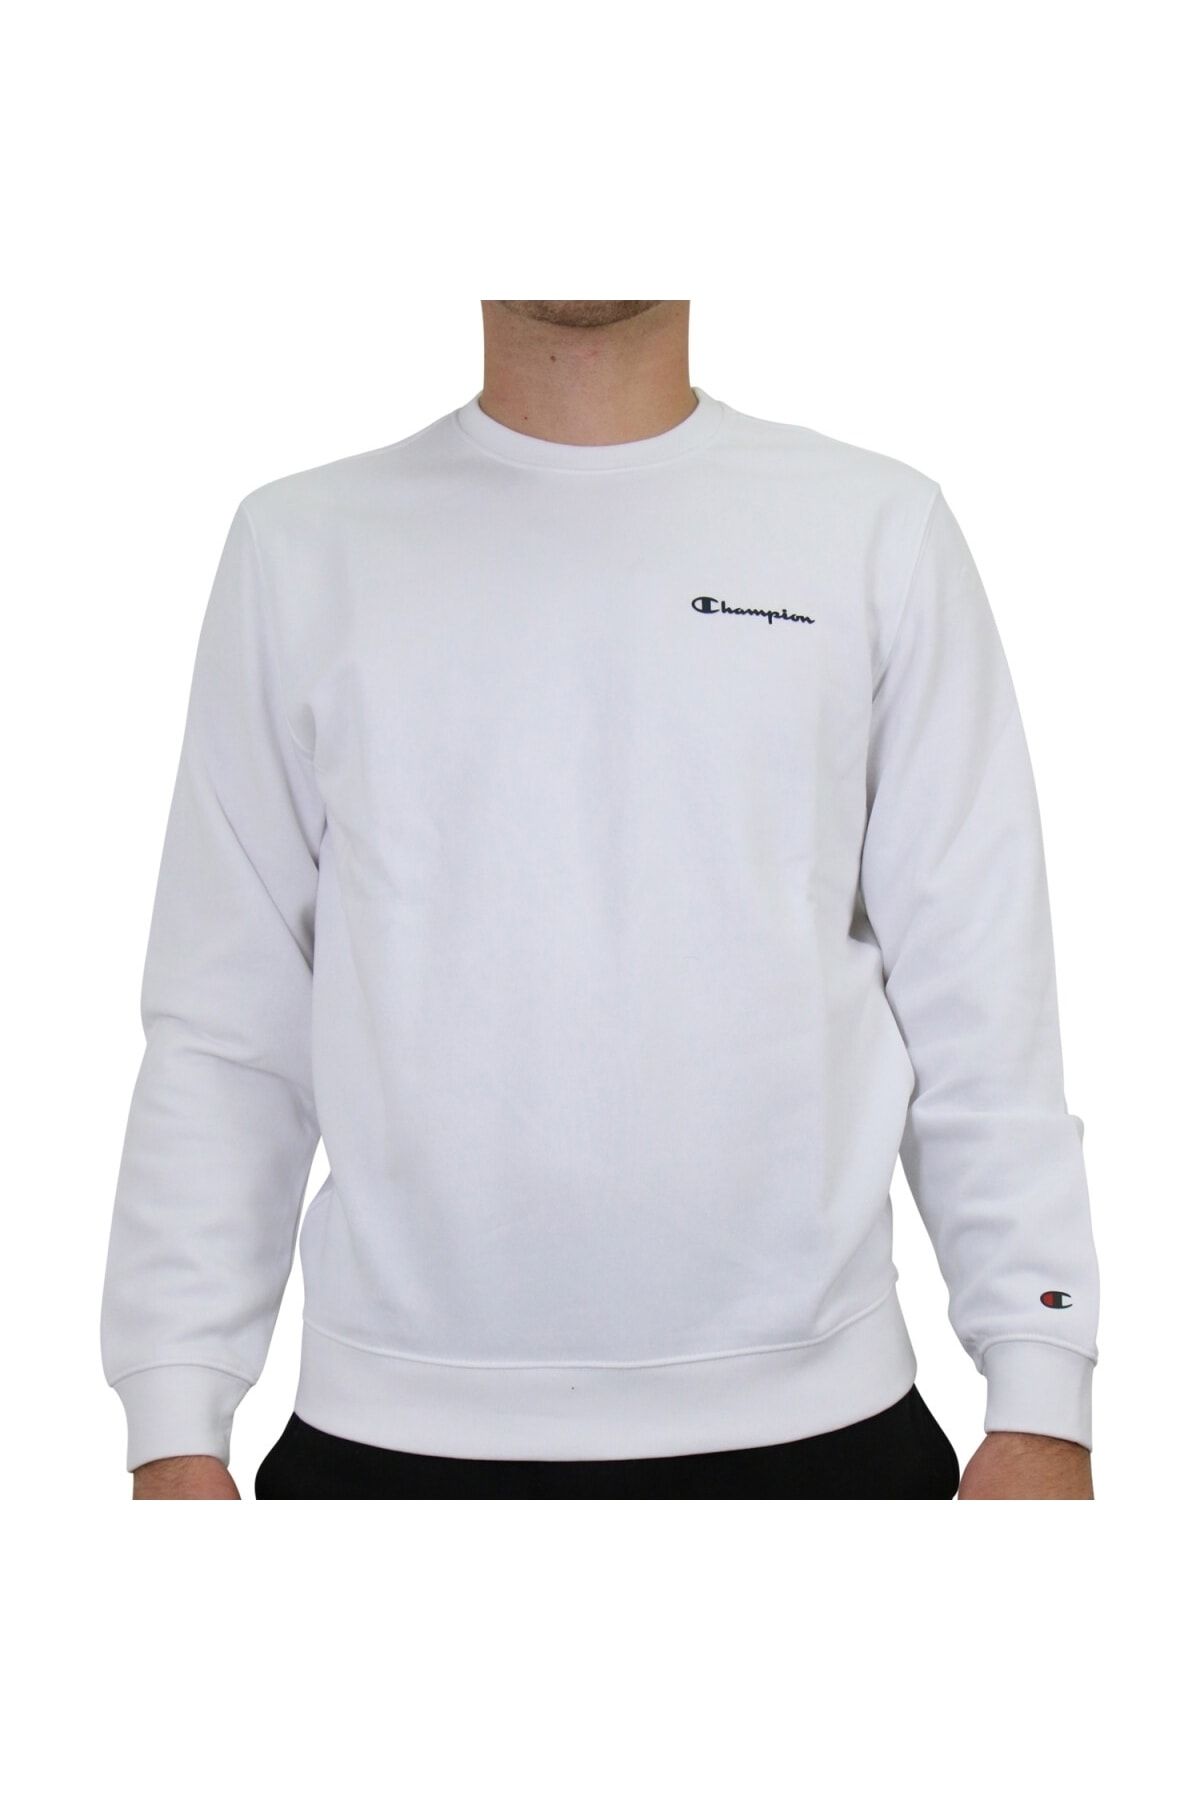 - Champion Regular Sweatshirt Trendyol Weiß - Fit -